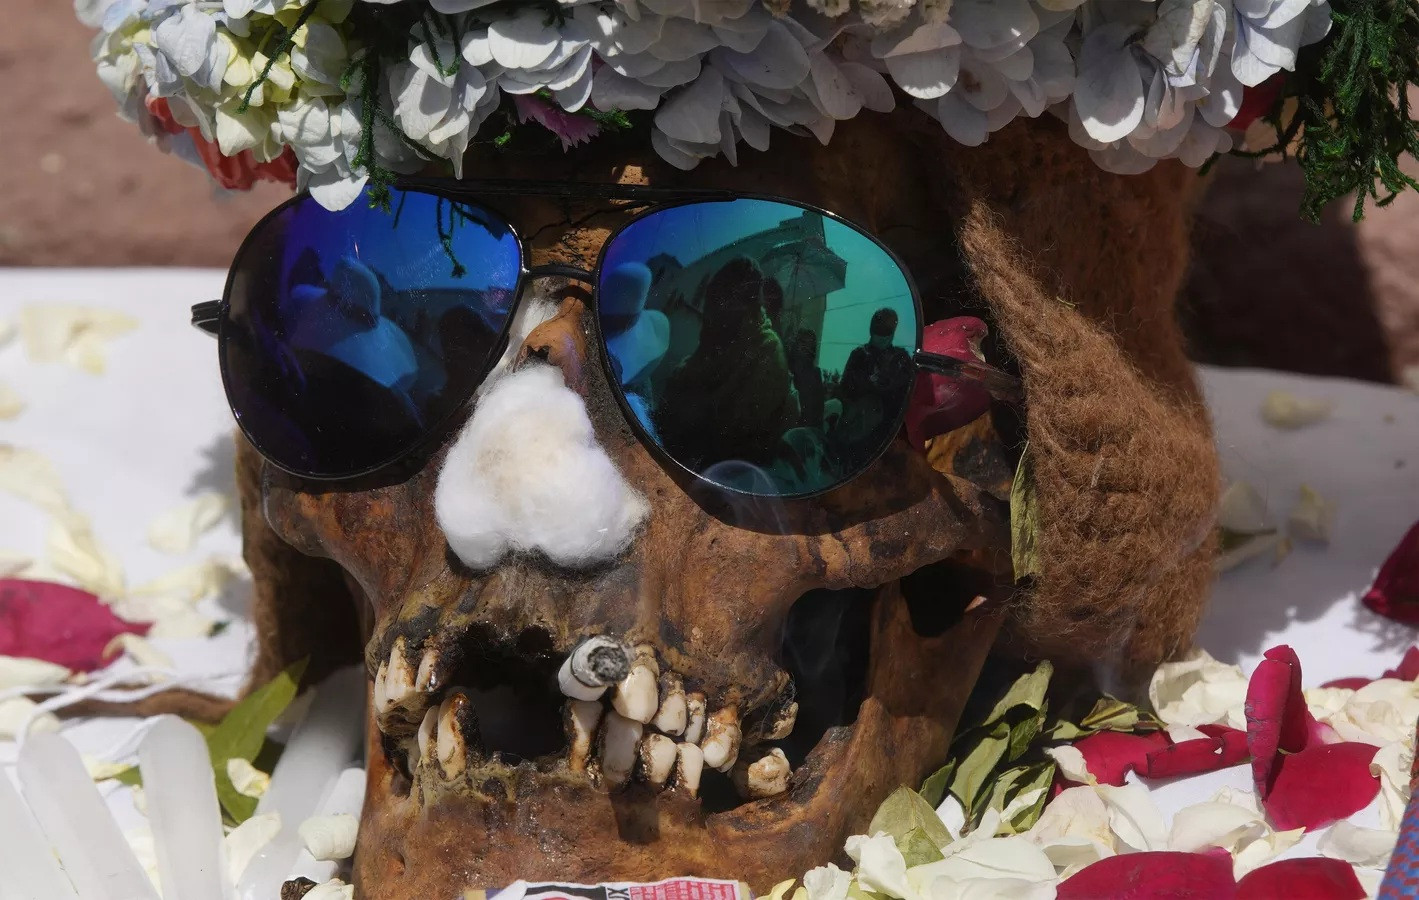 Chiếc sọ người được trang trí công phu trưng bày để giáo sĩ ban phước trong lễ hội thường niên tại một nghĩa trang ở La Paz, Bolivia.